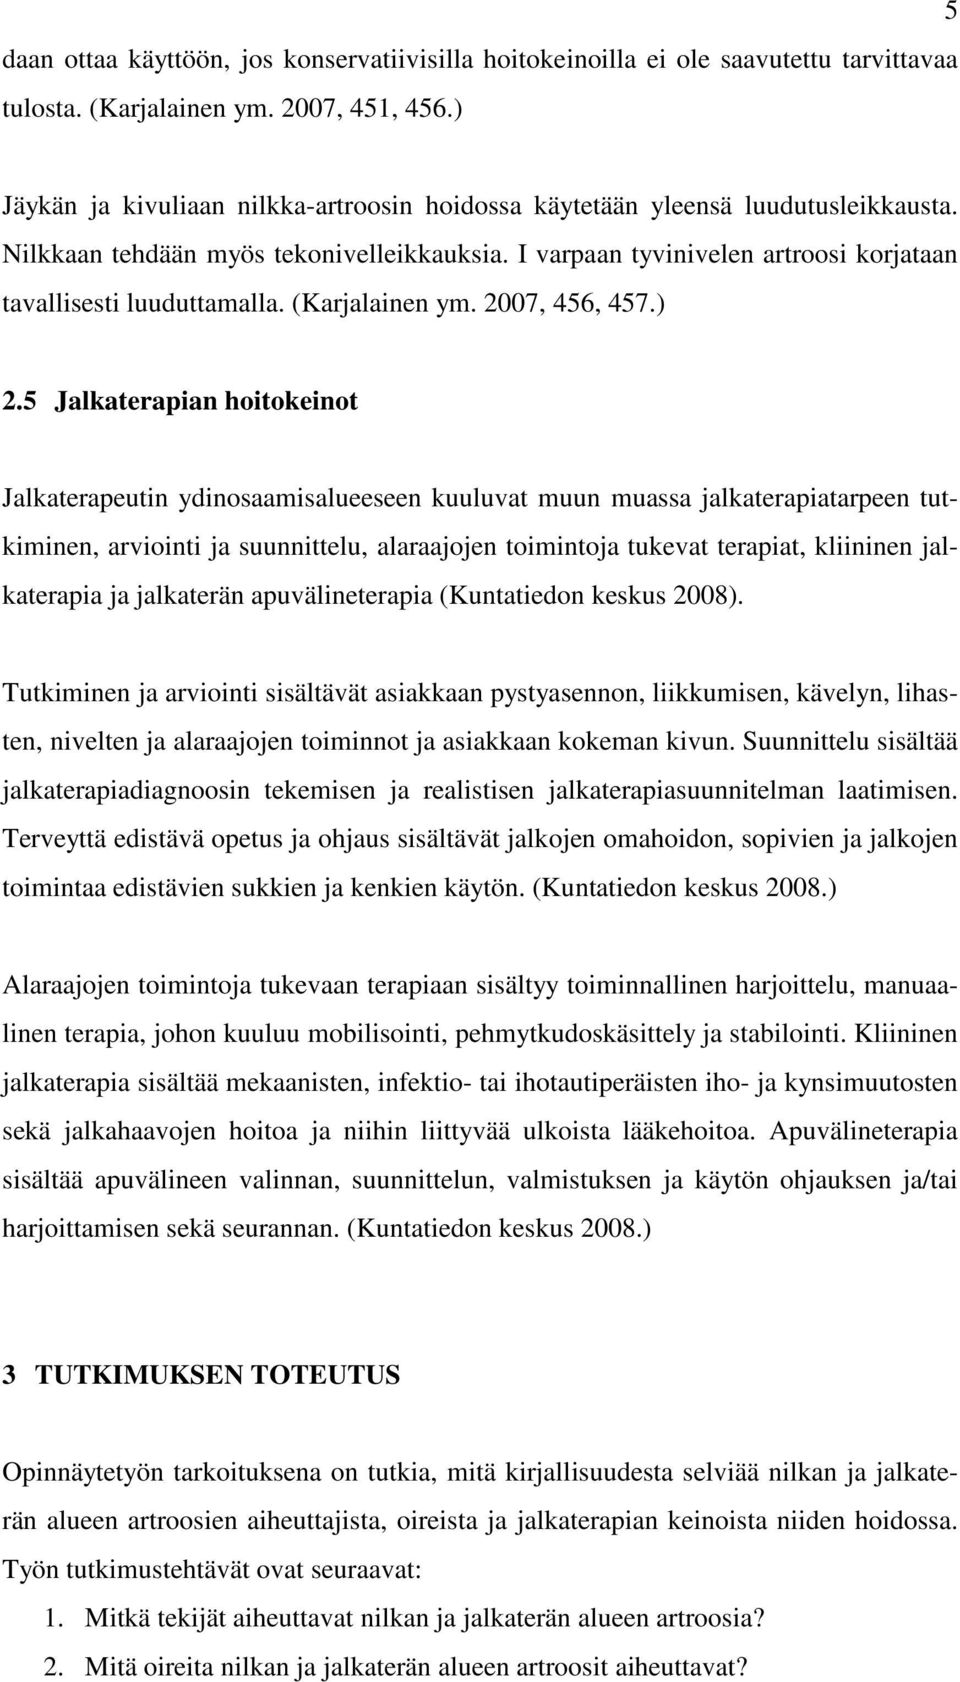 (Karjalainen ym. 2007, 456, 457.) 2.